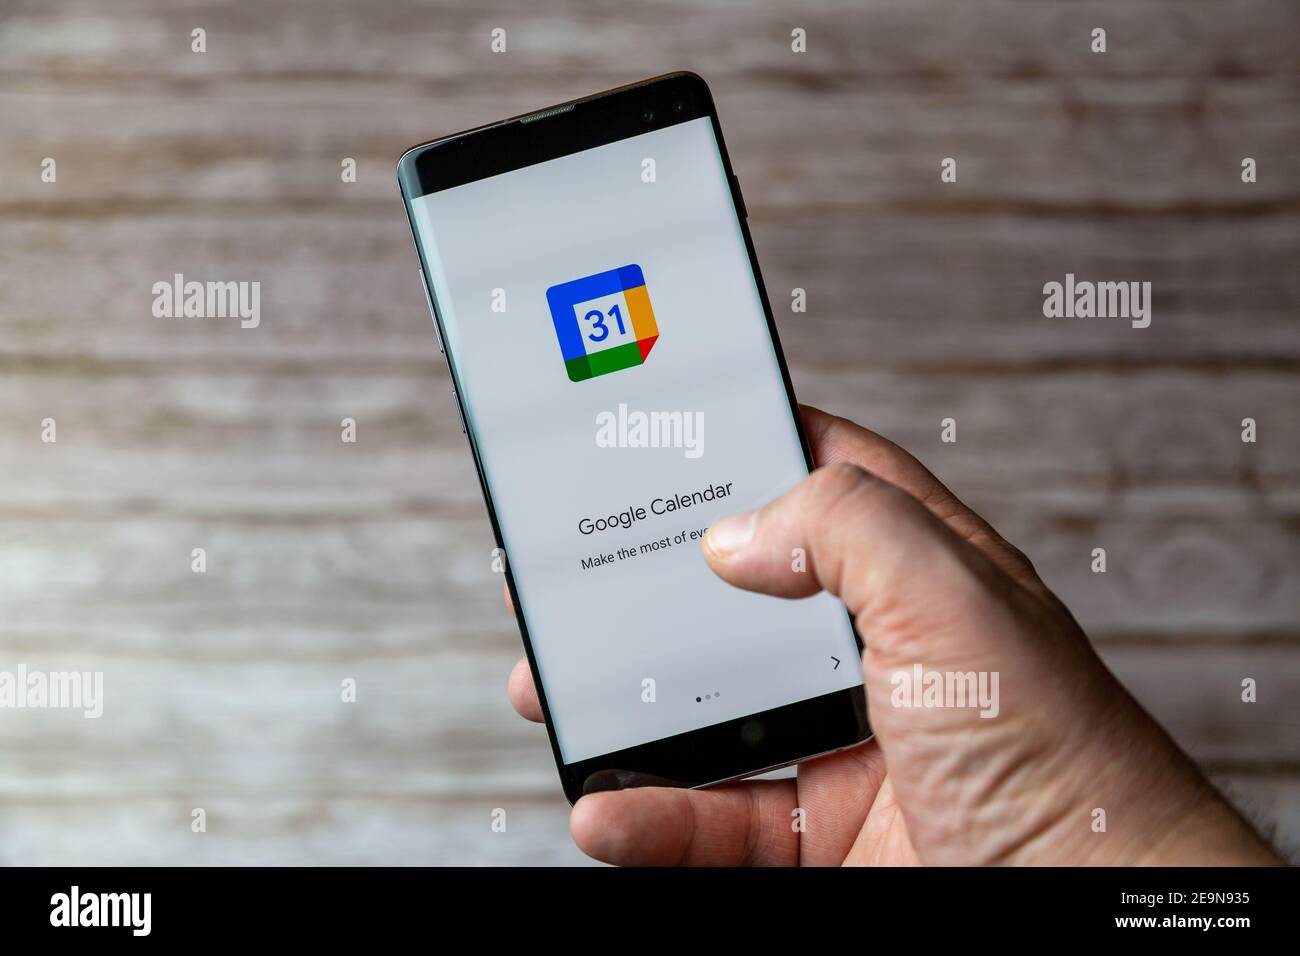 Un telefono cellulare o un telefono cellulare in attesa che mostra L'app Google Calendar viene aperta sullo schermo Foto Stock